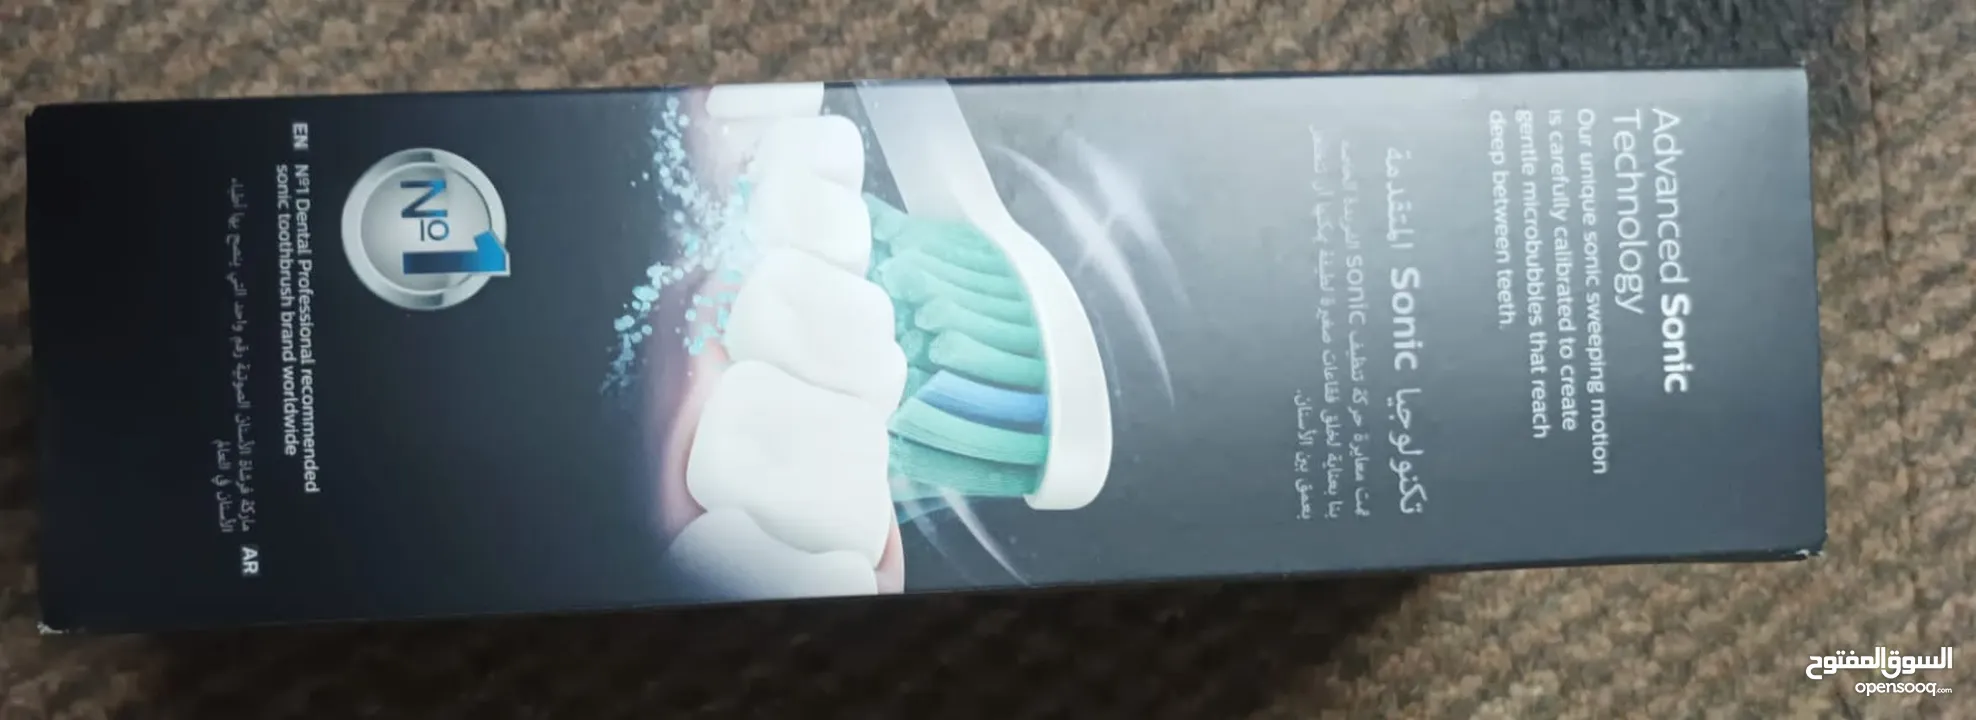 فرشاة الأسنان الكهربائيه سونكير من فيلبس